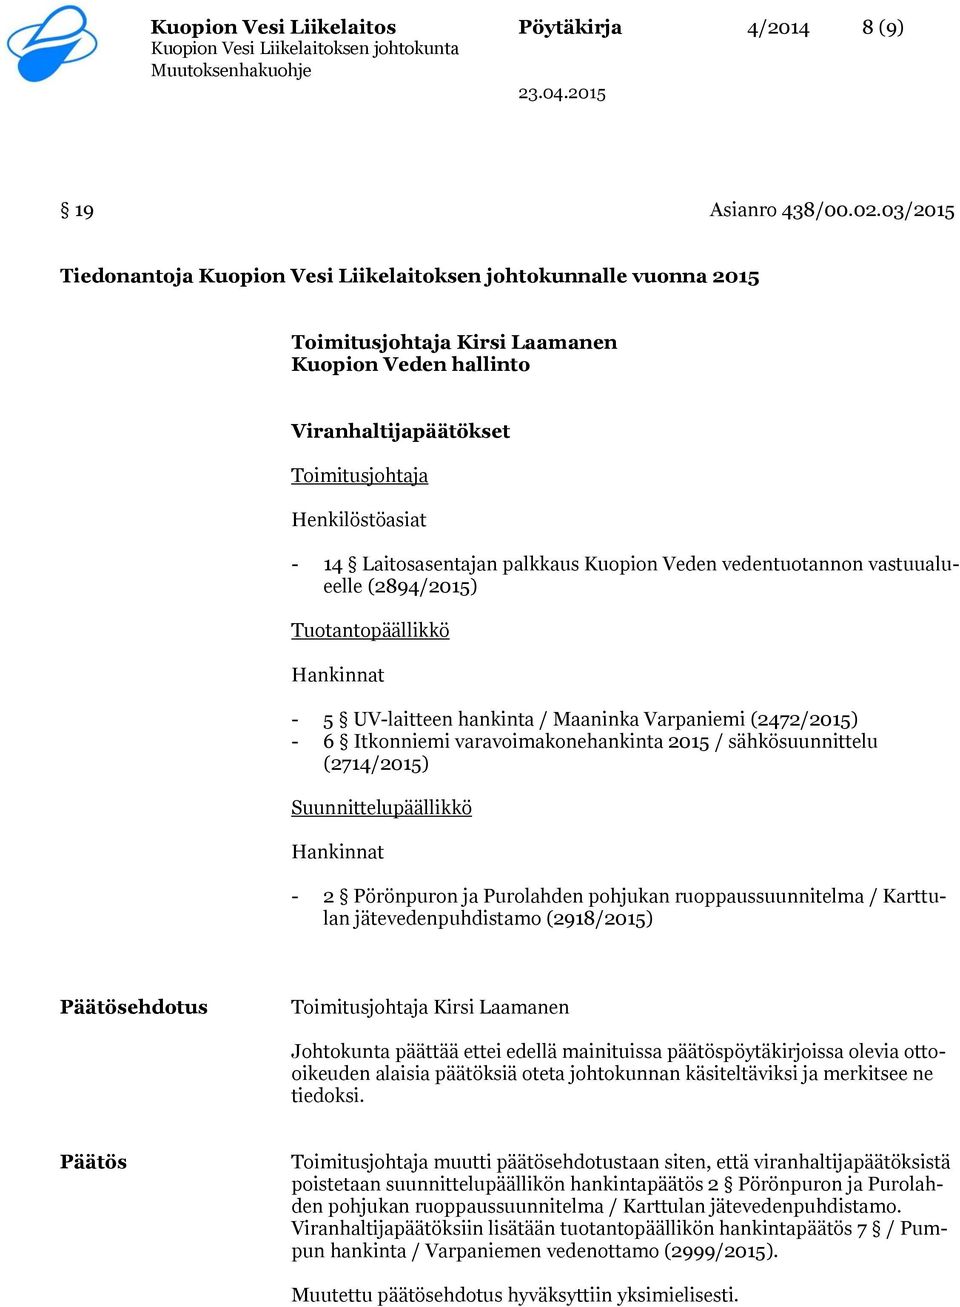 Laitosasentajan palkkaus Kuopion Veden vedentuotannon vastuualueelle (2894/2015) Tuotantopäällikkö Hankinnat - 5 UV-laitteen hankinta / Maaninka Varpaniemi (2472/2015) - 6 Itkonniemi